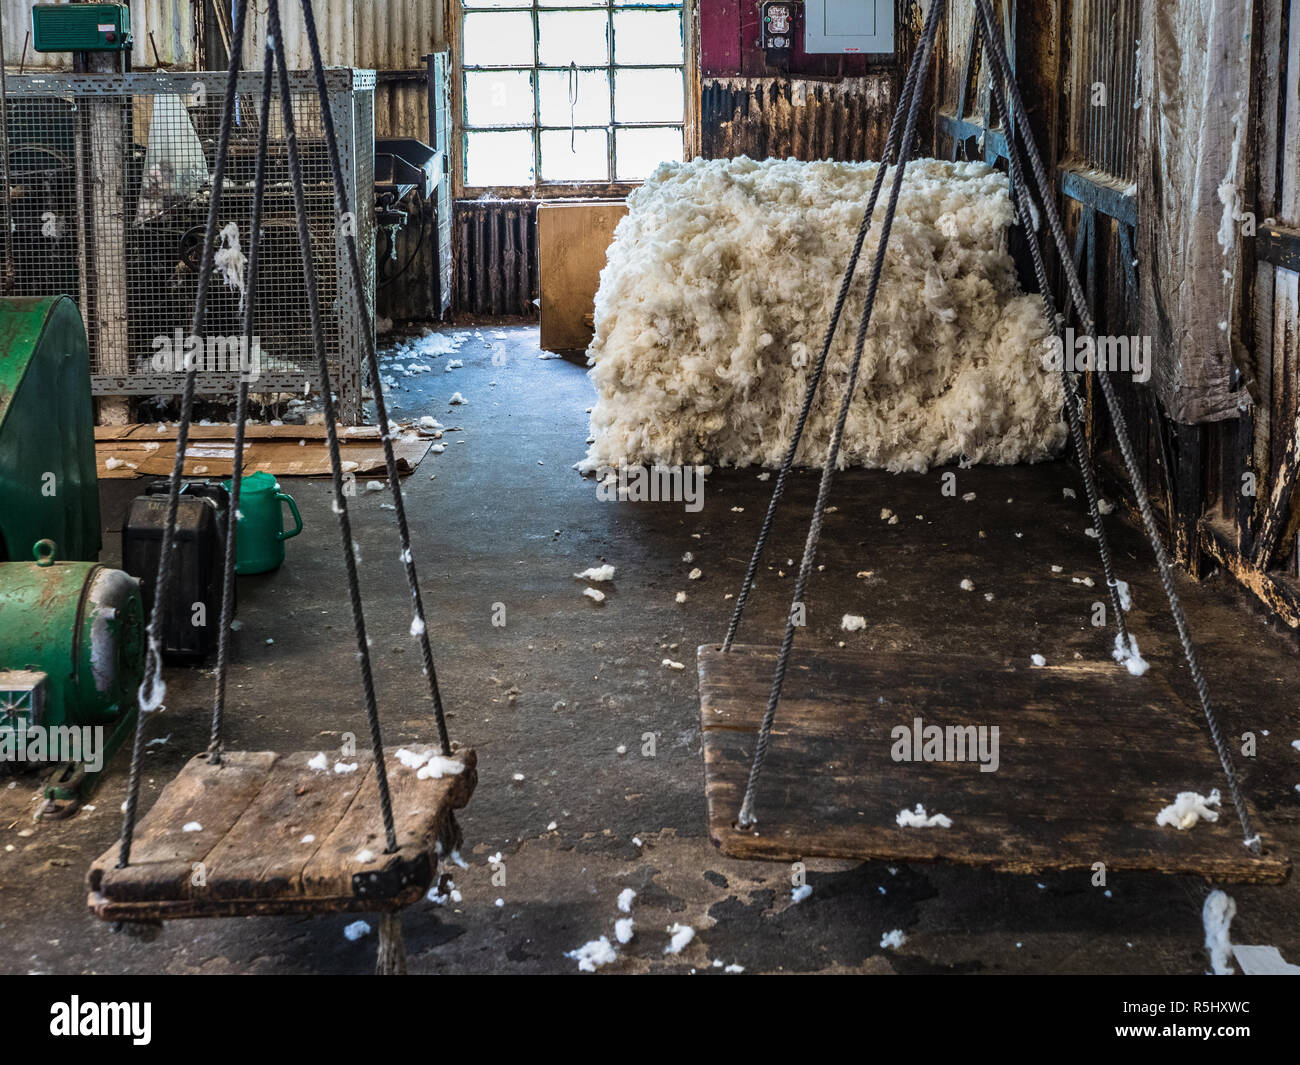 Scaglie di lana immagini e fotografie stock ad alta risoluzione - Alamy